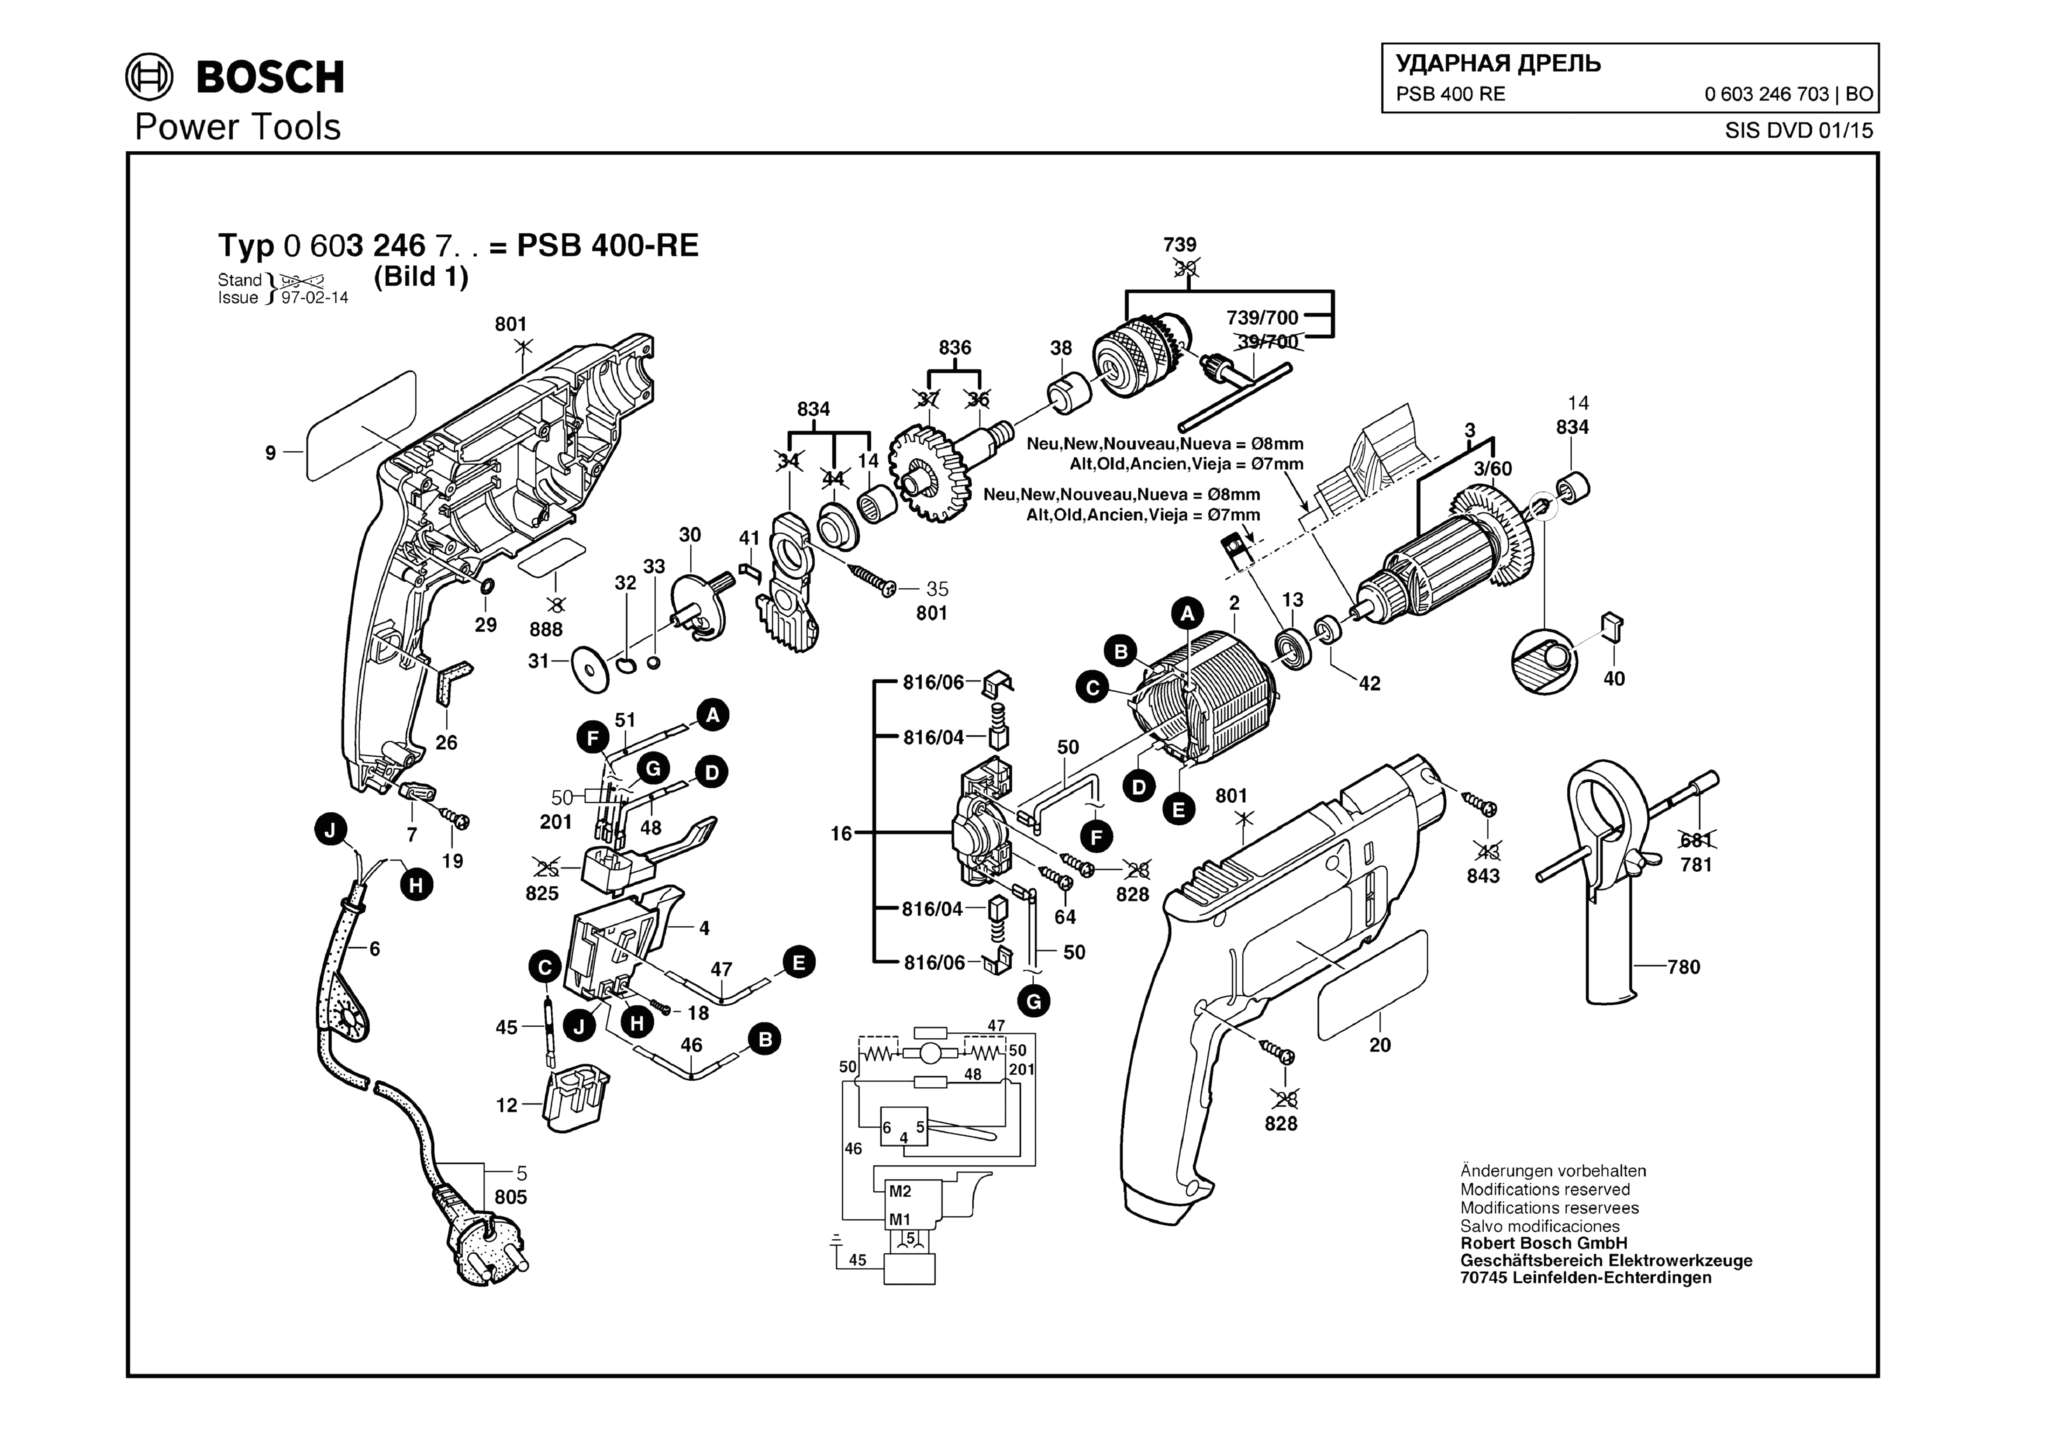 Запчасти, схема и деталировка Bosch PSB 400 RE (ТИП 0603246703)